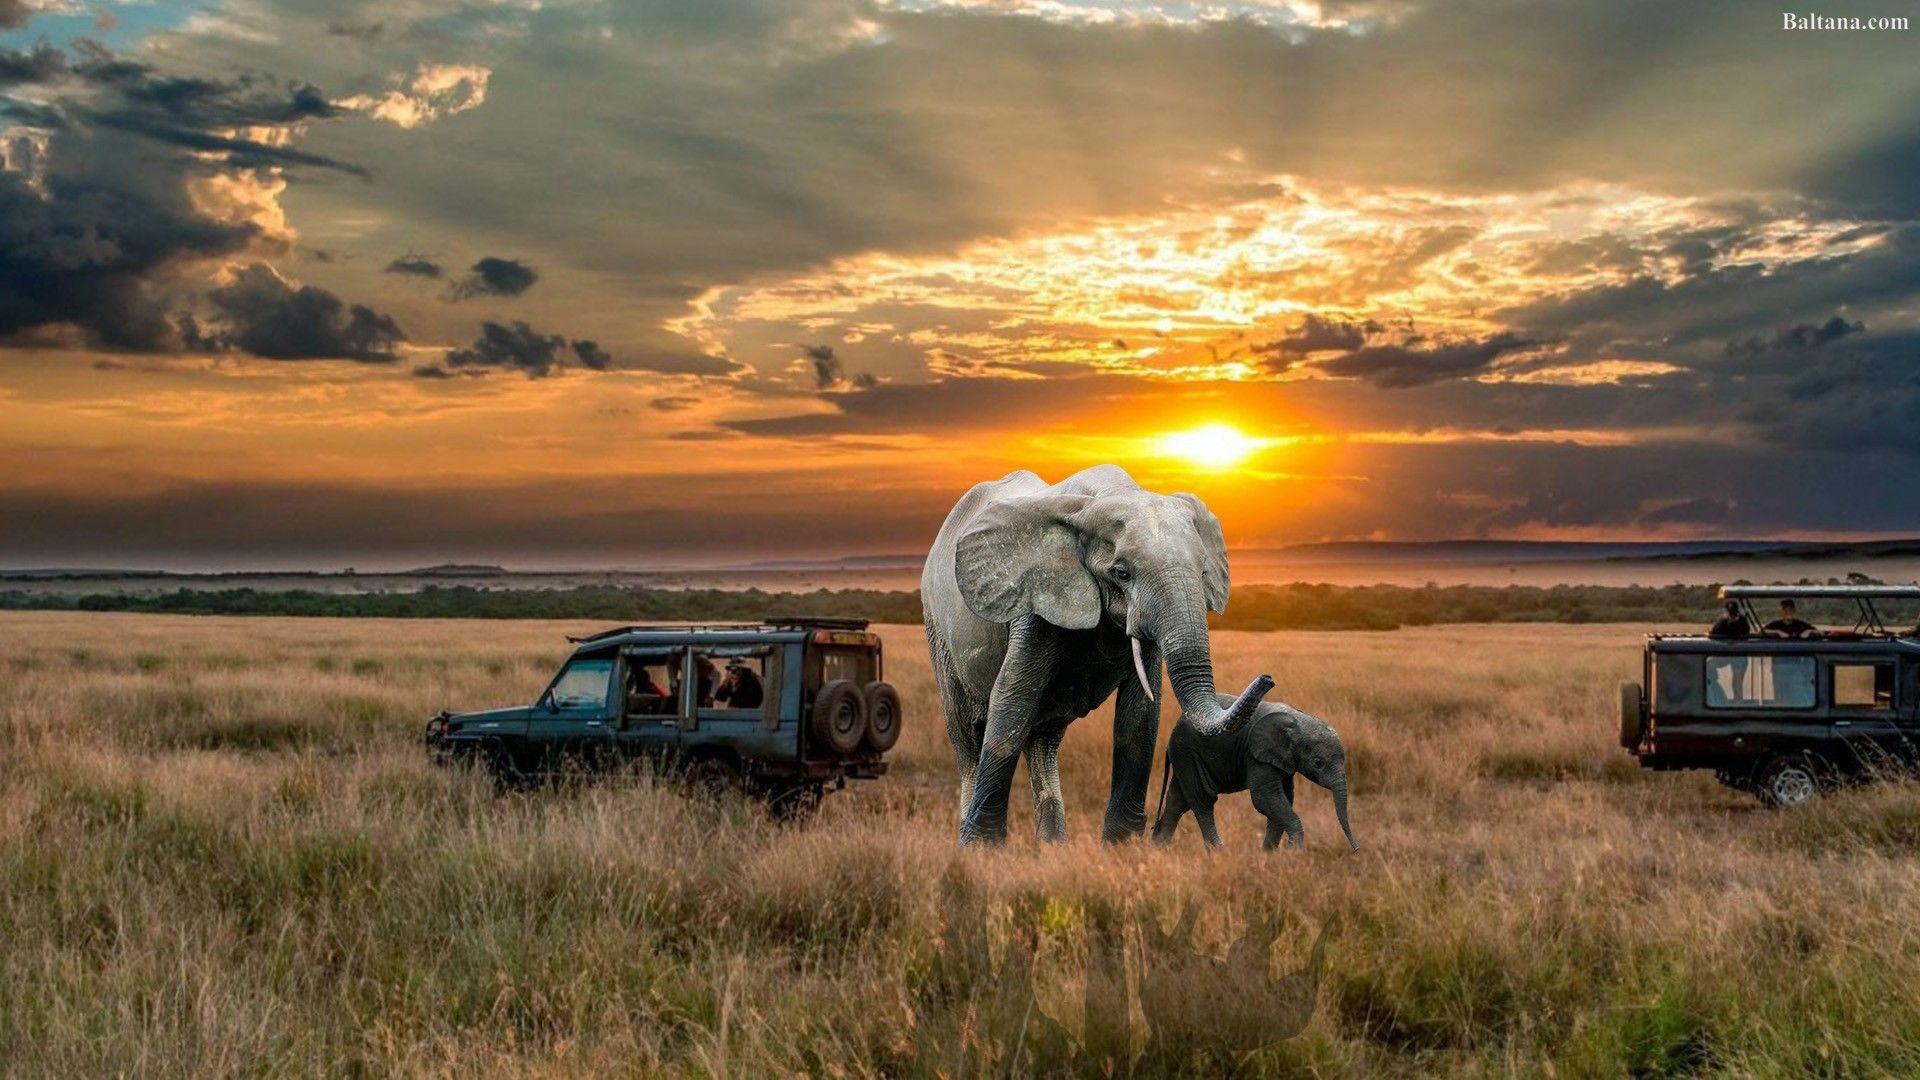 safari background image ipad